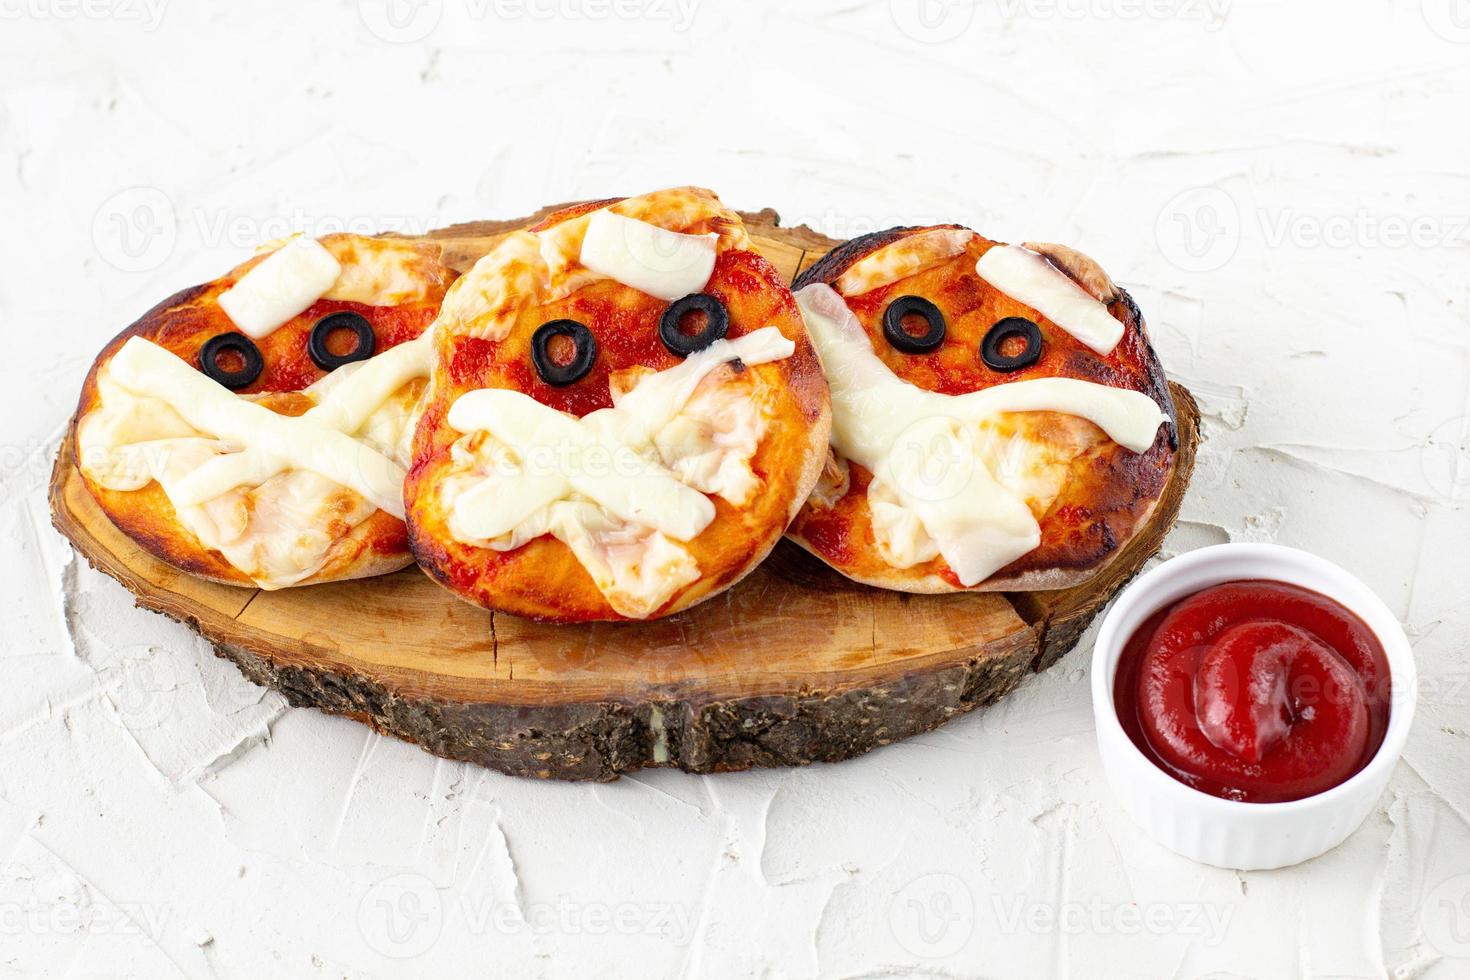 mini pizza comme momie pour les enfants avec du fromage, des olives et du ketchup. drôle de nourriture folle d'halloween pour les enfants photo